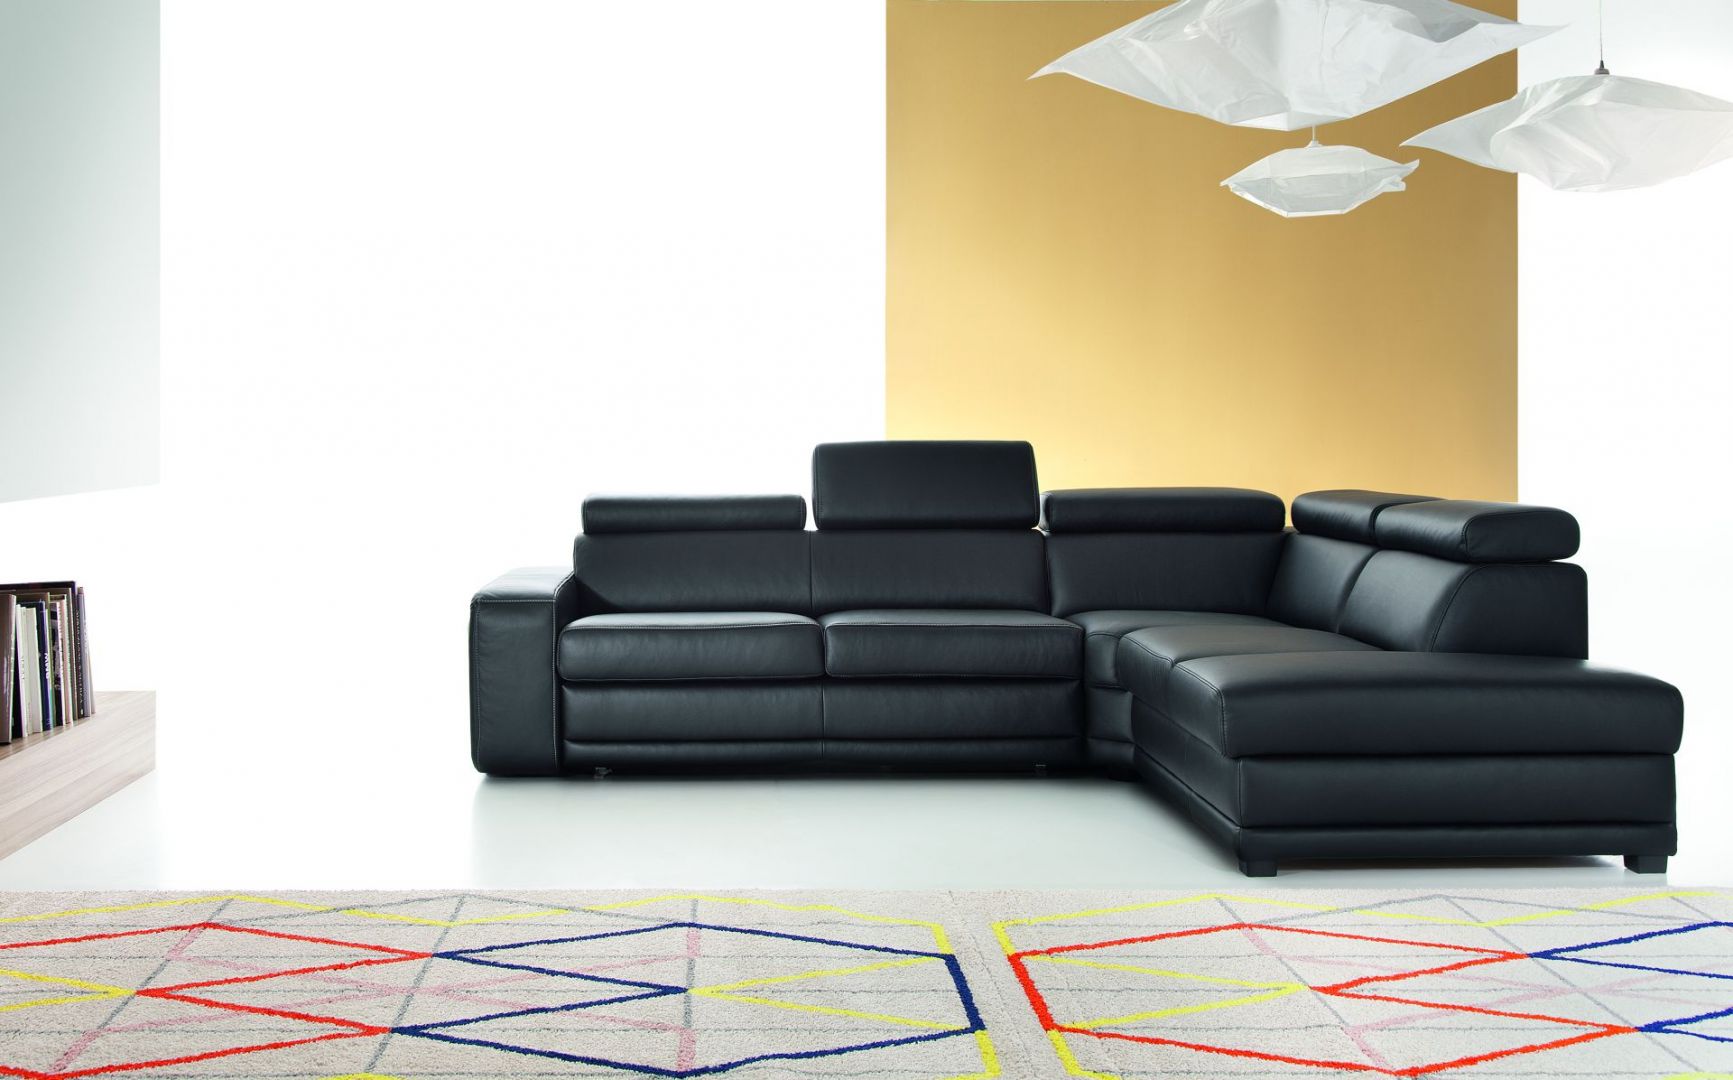 Sofa Matt to nowoczesne podejście do sofy tapicerowanej skórą. W czarnym kolorze prezentuje się wyjątkowo stylowo i elegancko. Fot. Etap Sofa